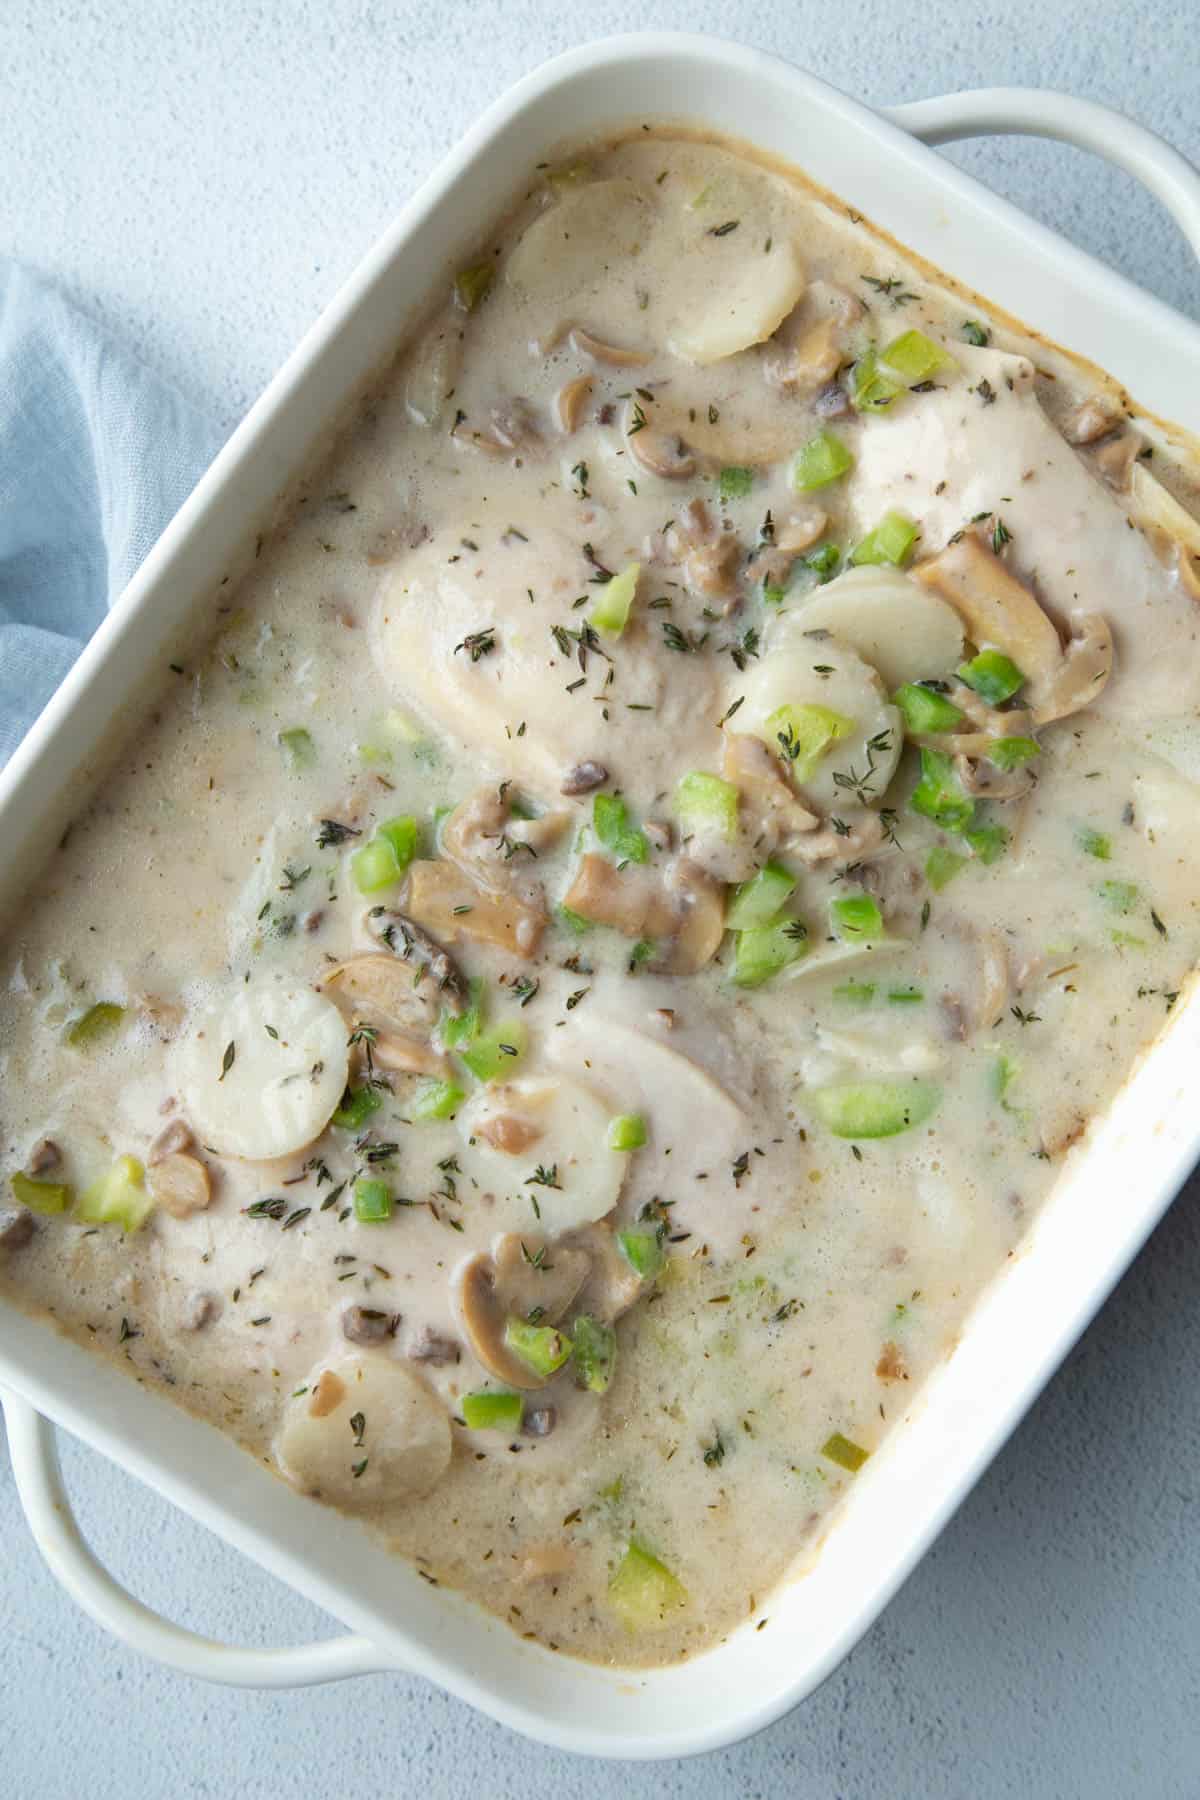 cream of mushroom chicken in a white casserole dish.